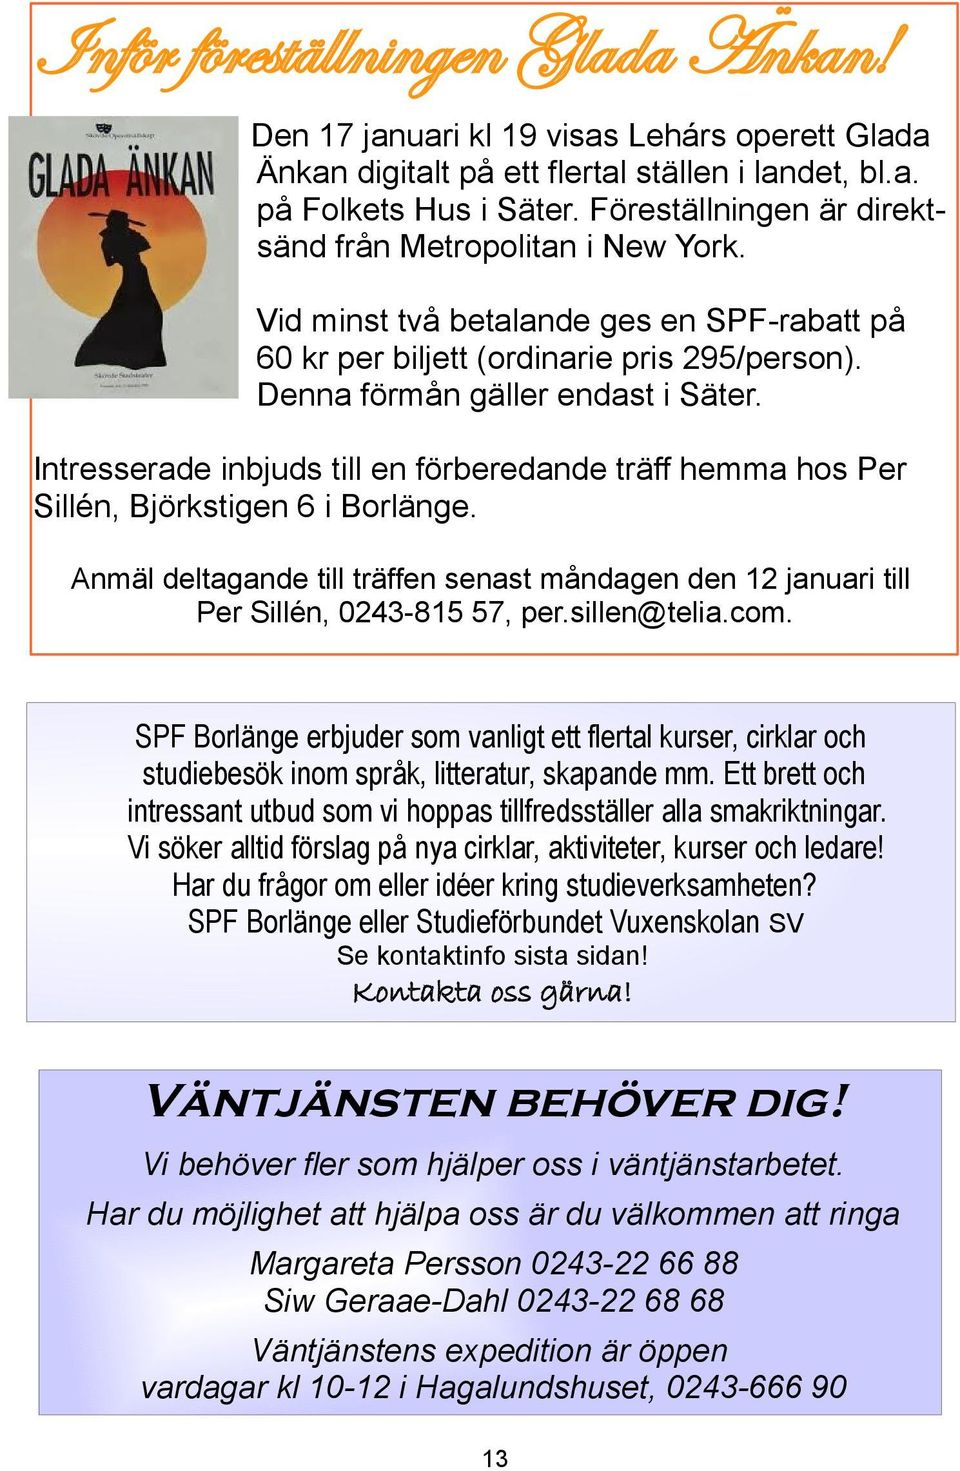 Intresserade inbjuds till en förberedande träff hemma hos Per Sillén, Björkstigen 6 i Borlänge. Anmäl deltagande till träffen senast måndagen den 12 januari till Per Sillén, 0243-815 57, per.